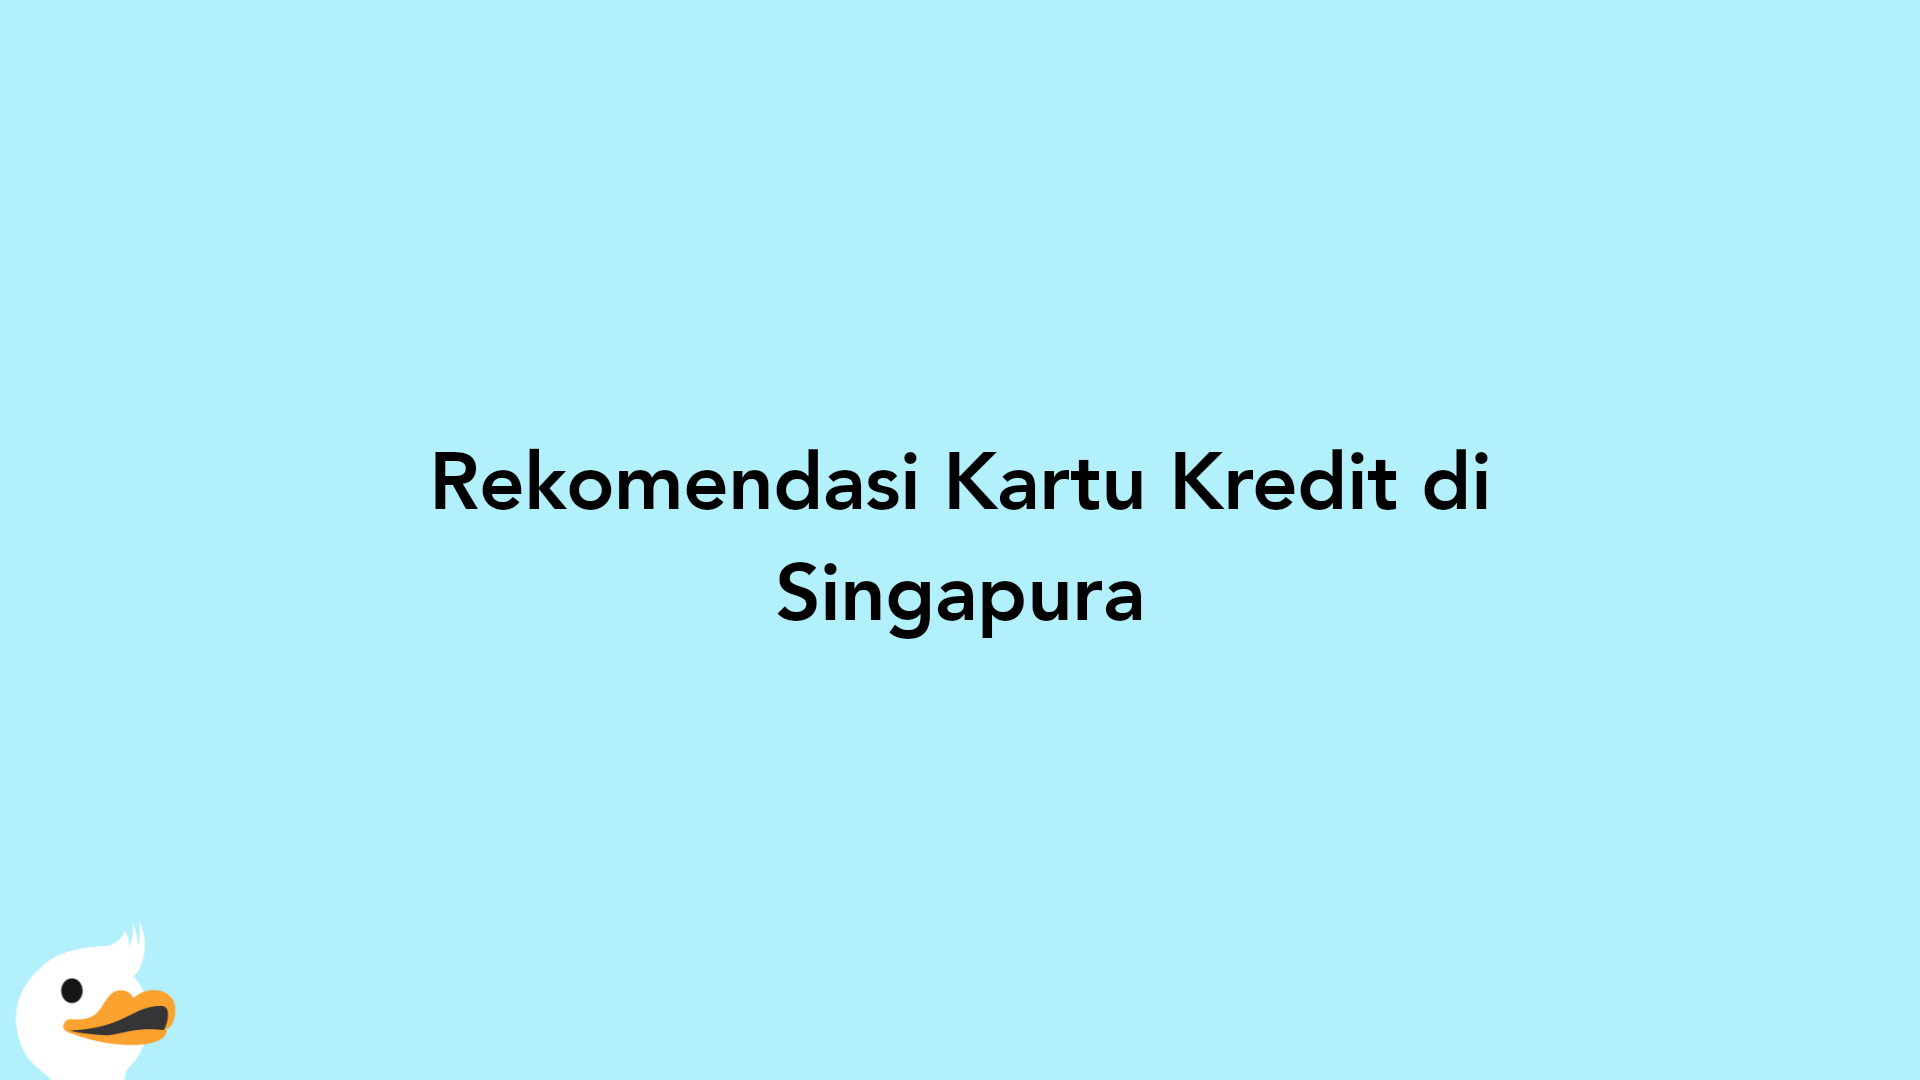 Rekomendasi Kartu Kredit di Singapura